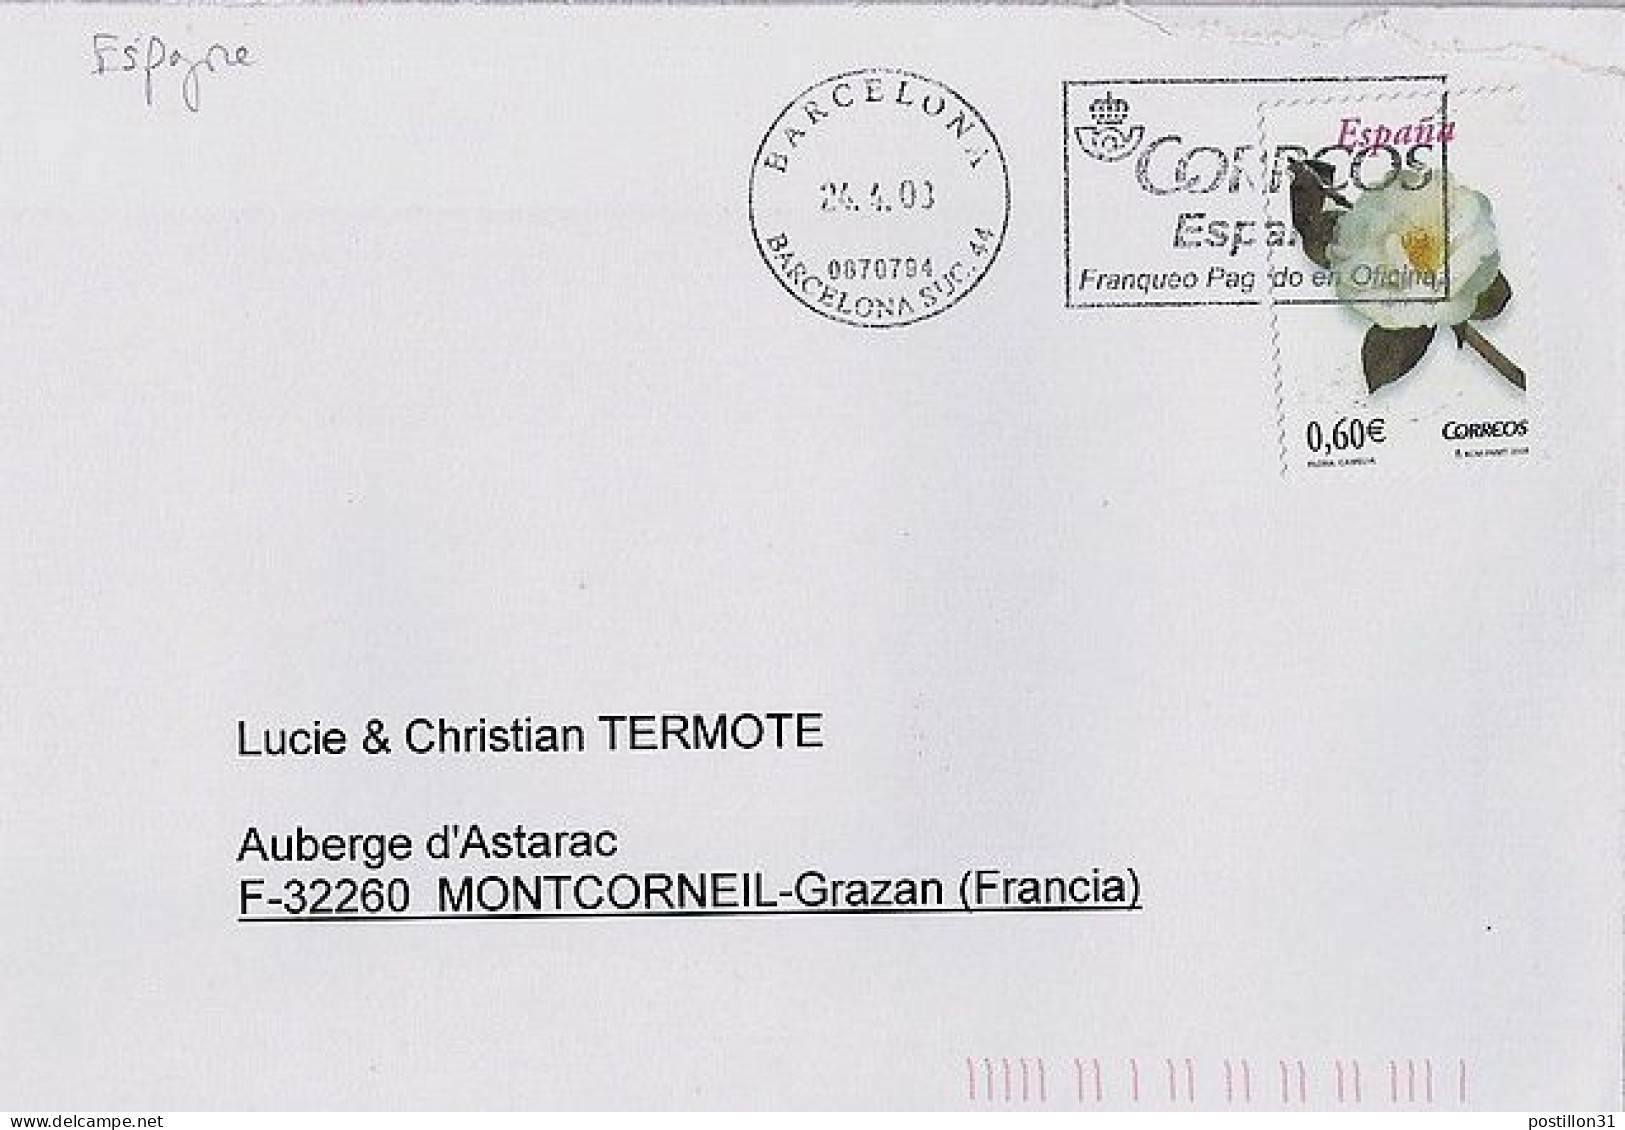 ESPAGNE N° S/L. DE BARCELONE/24.4.08 POUR LA FRANCE - Covers & Documents